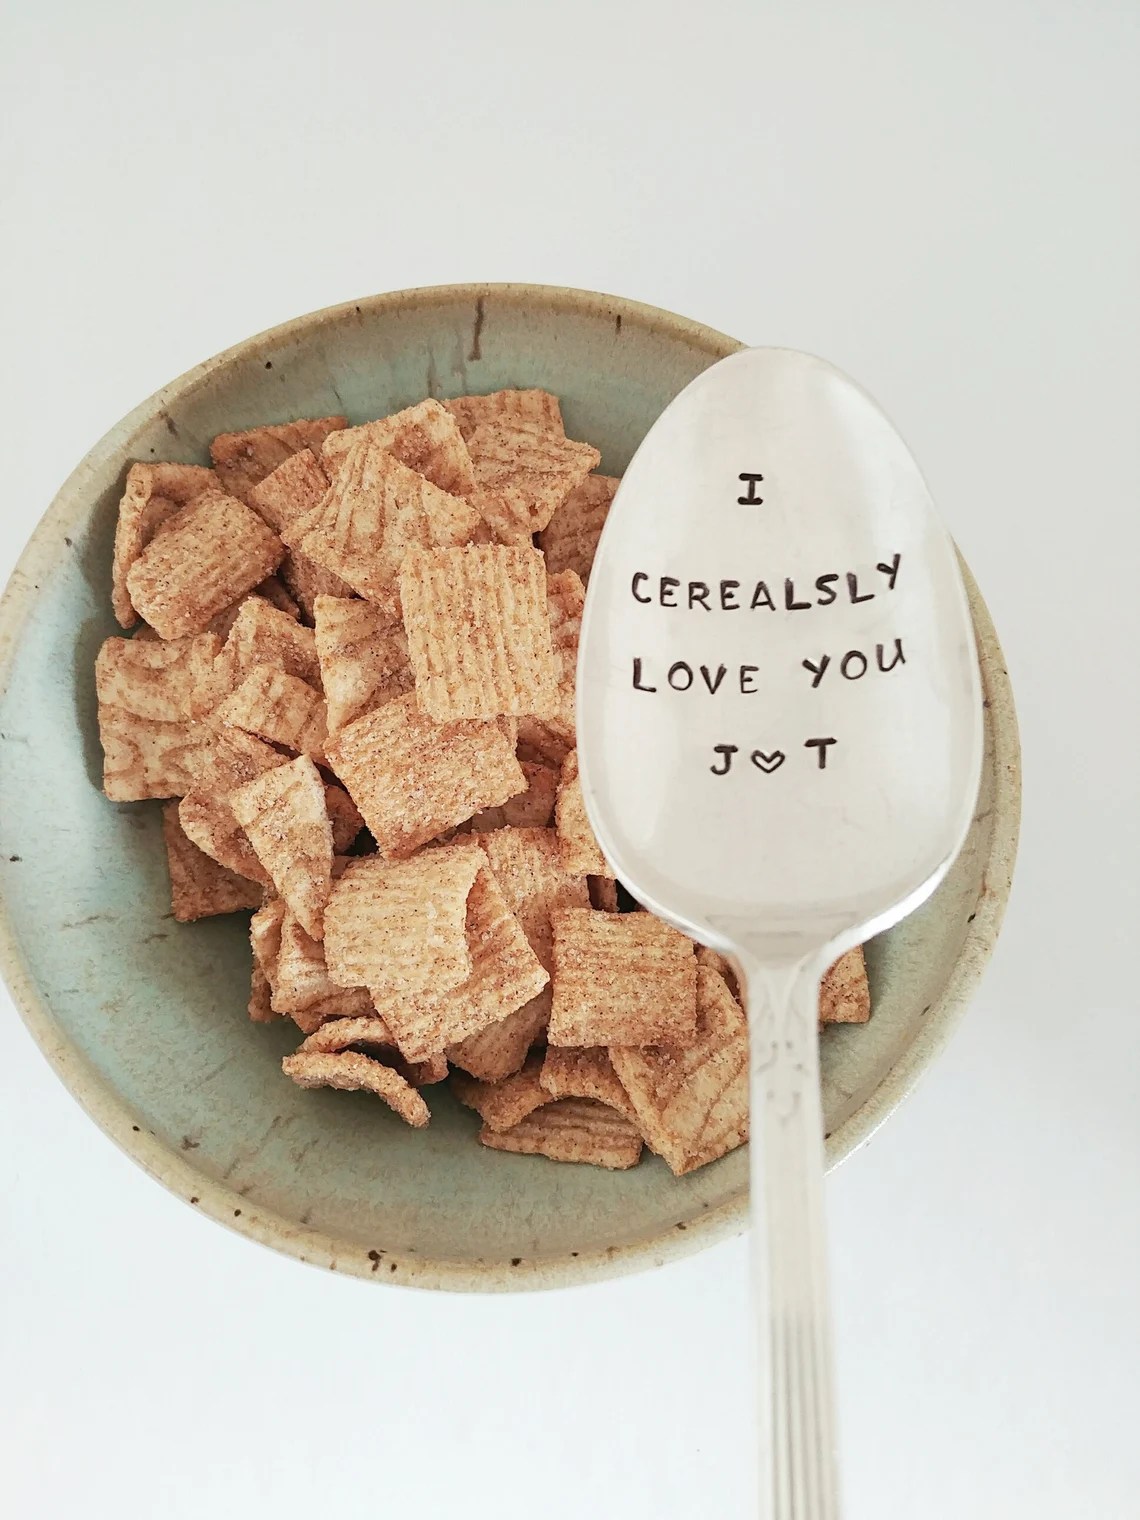 cuchara de cerealsly love you de etsy flotando sobre un tazón de cereal, un lindo regalo para el día de san valentín